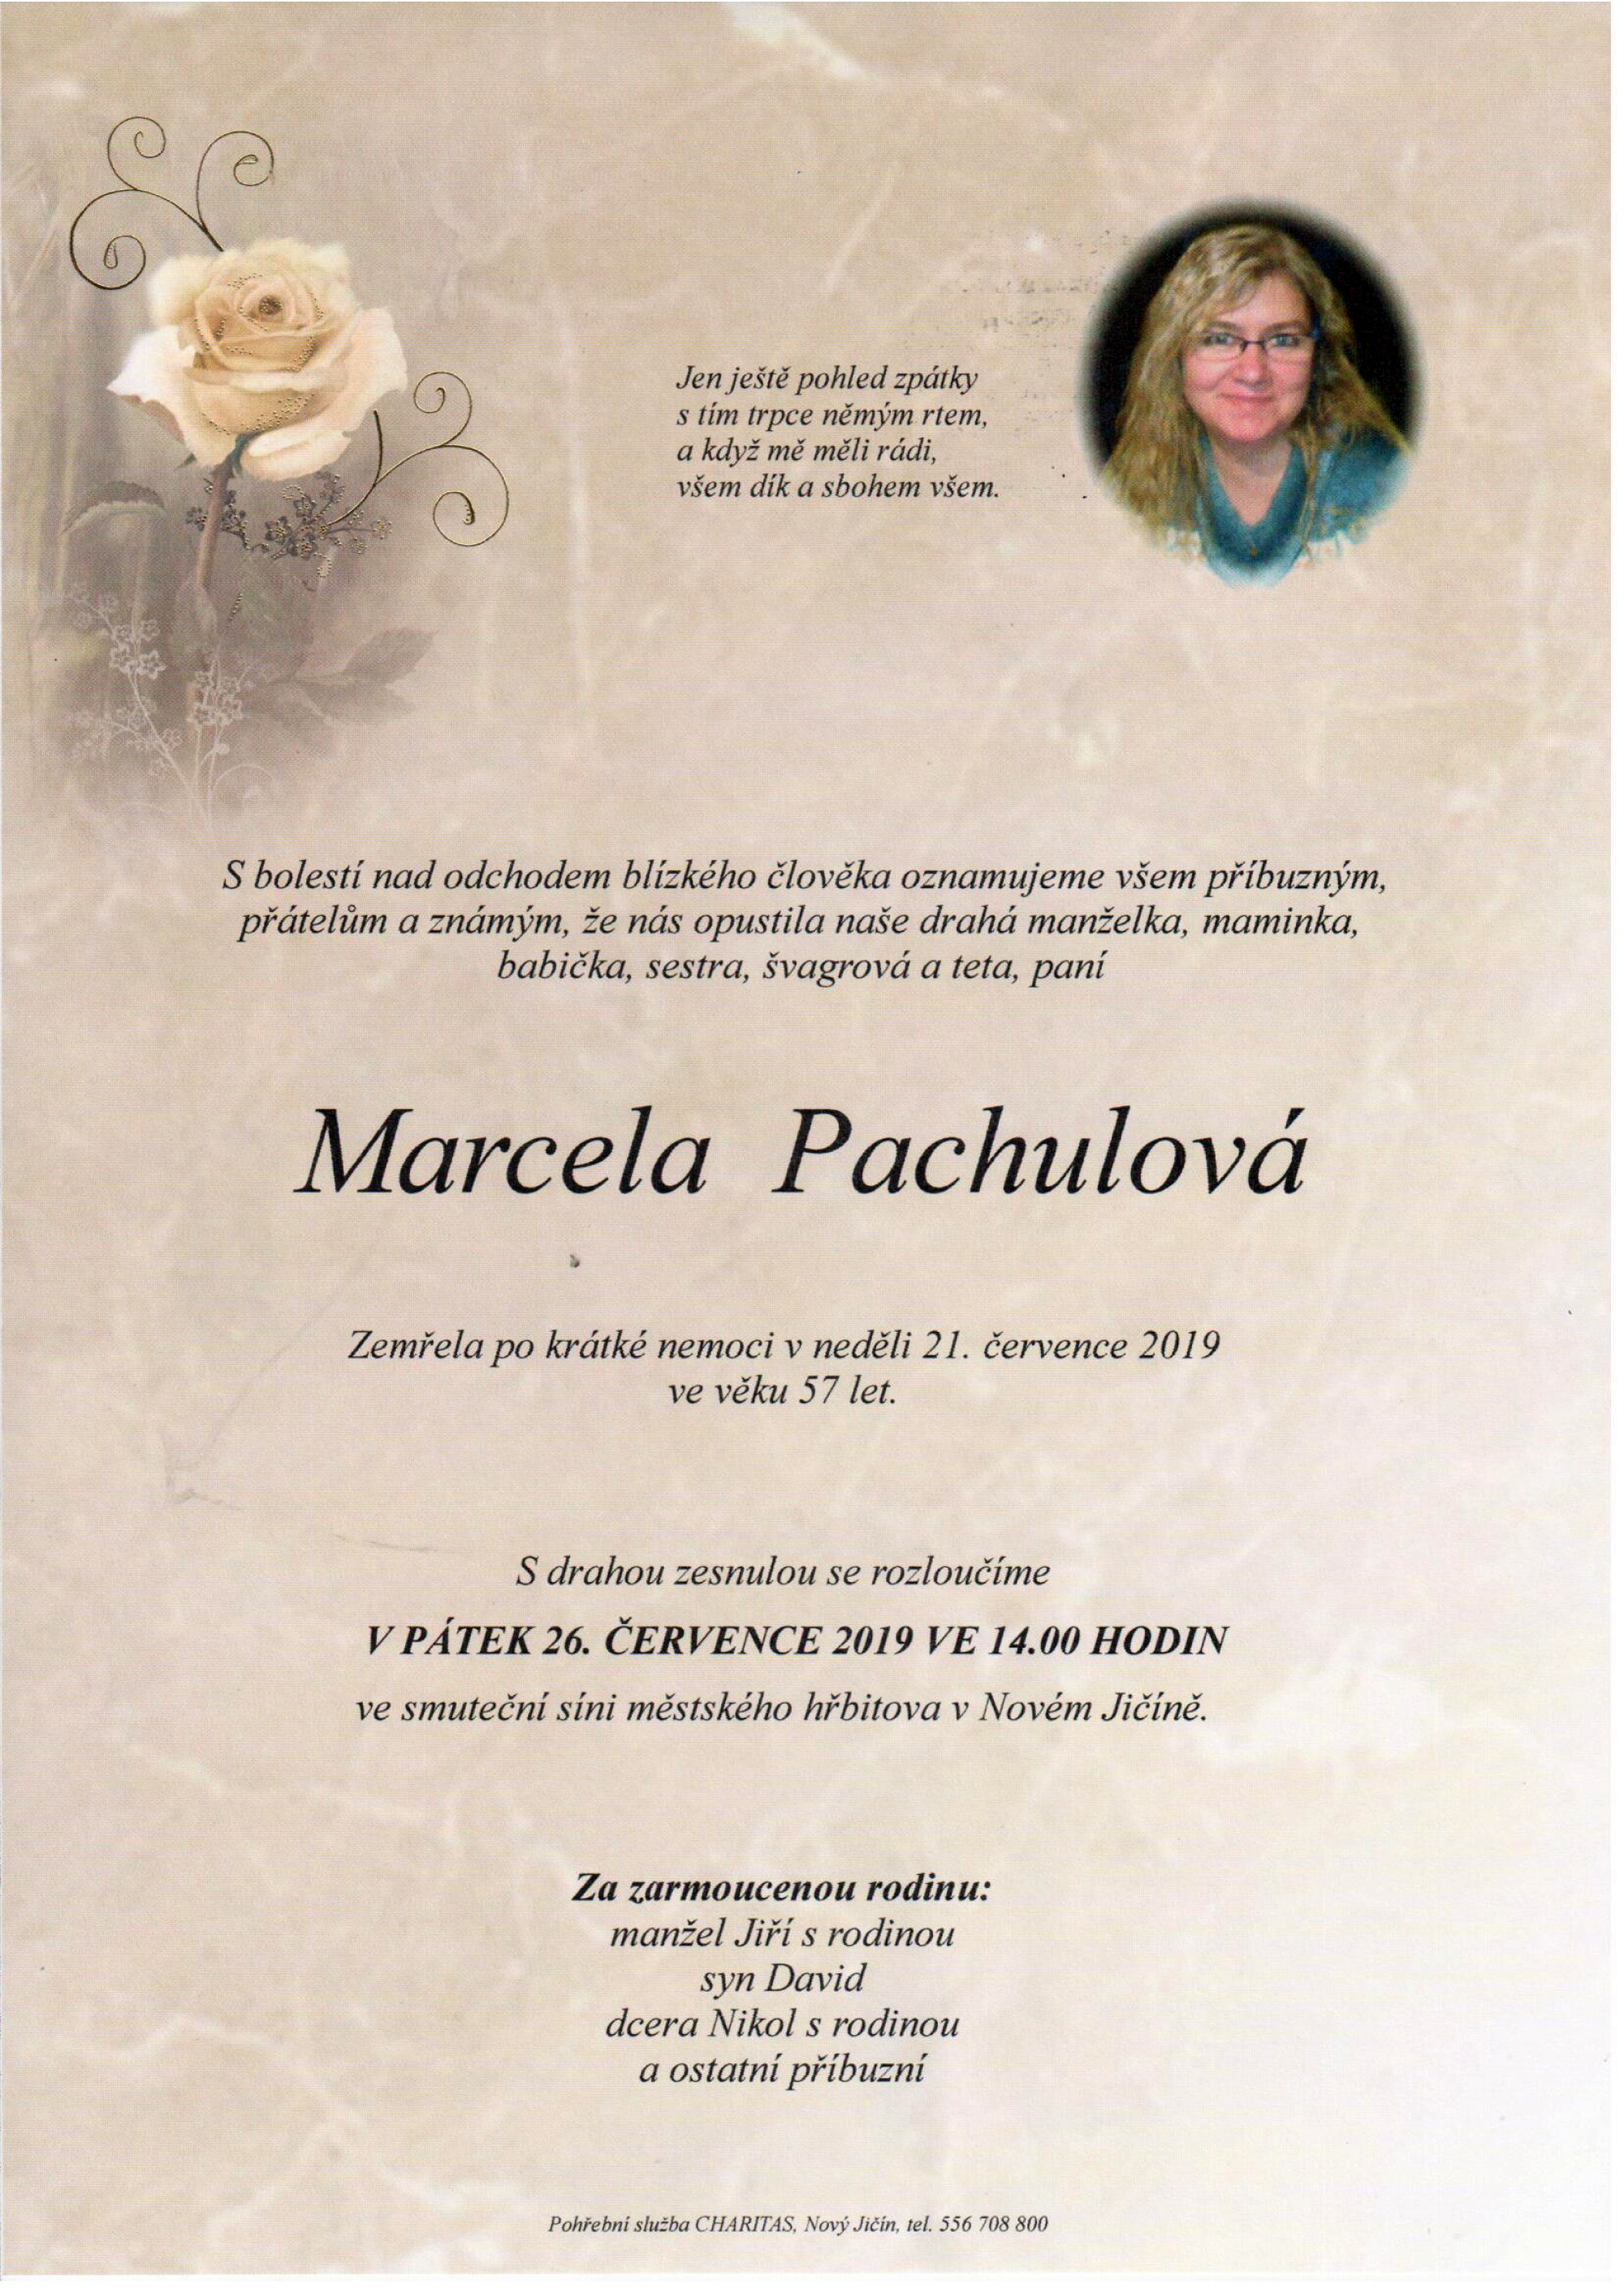 Marcela Pachulová